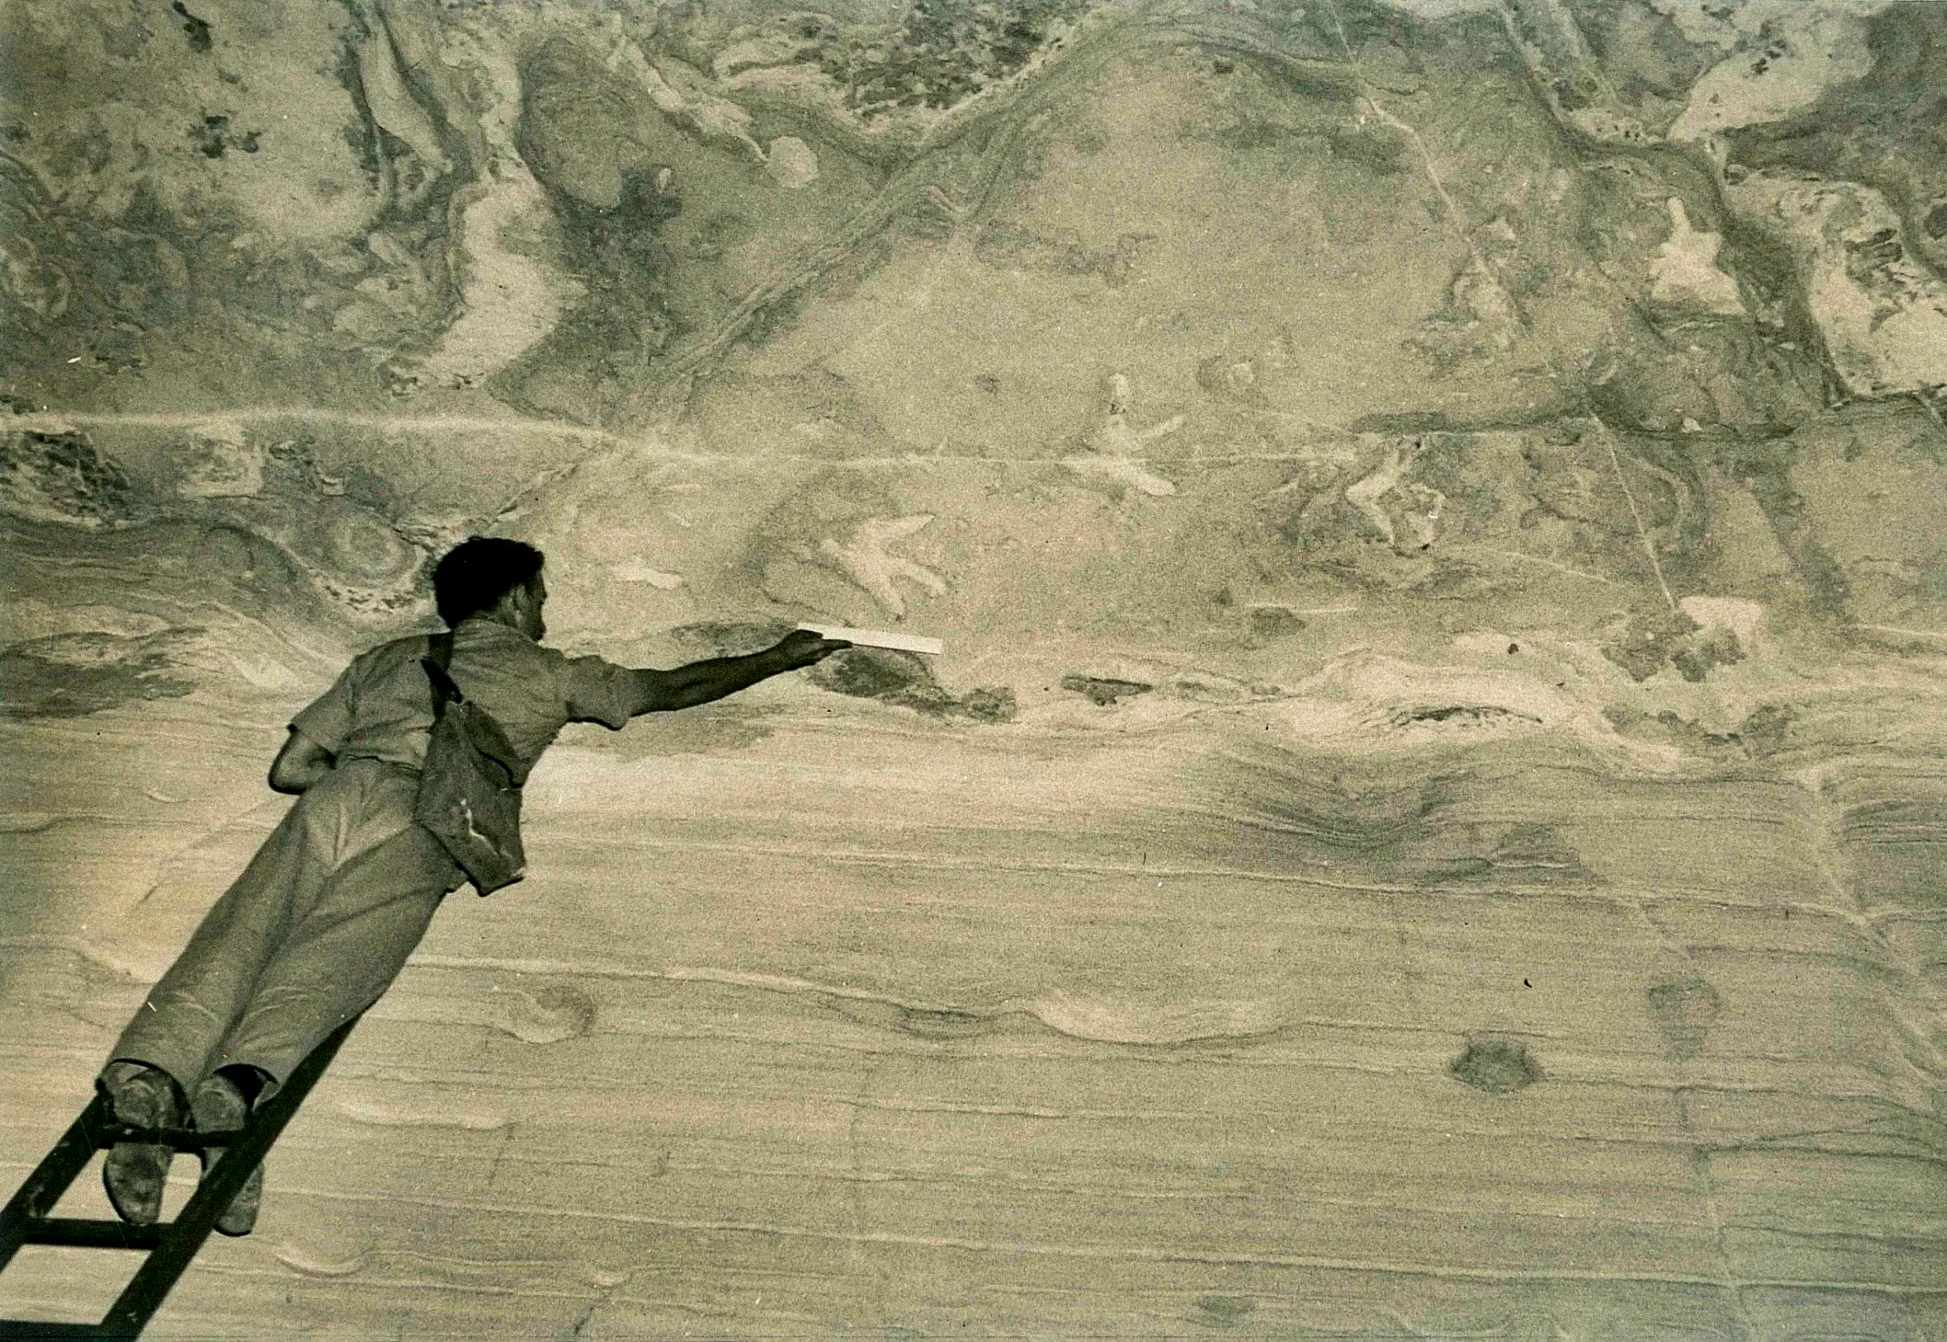 Ross Staines mesurant les empreintes à 4.5 mètres au-dessus du sol de la grotte (vers 1954).